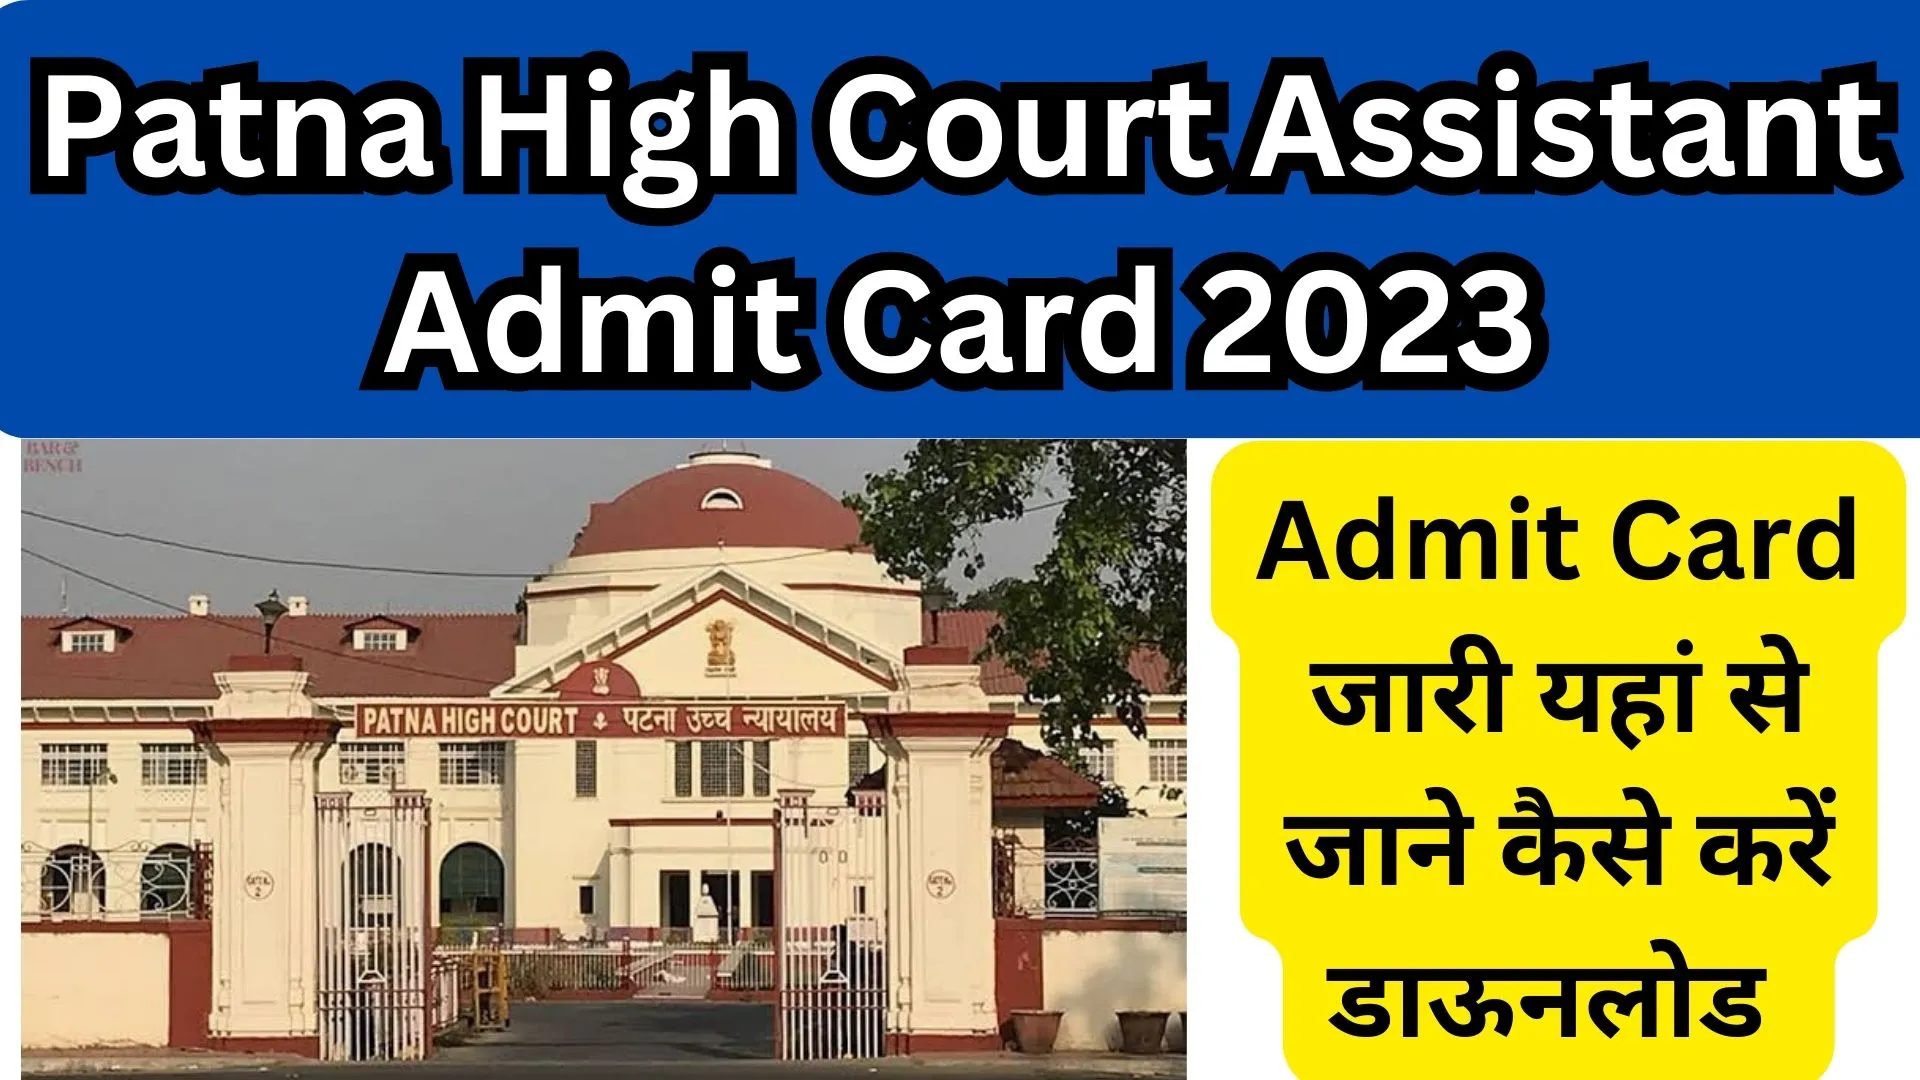 Patna High Court Assistant Admit Card 2023 1 Patna High Court Assistant Admit Card 2023